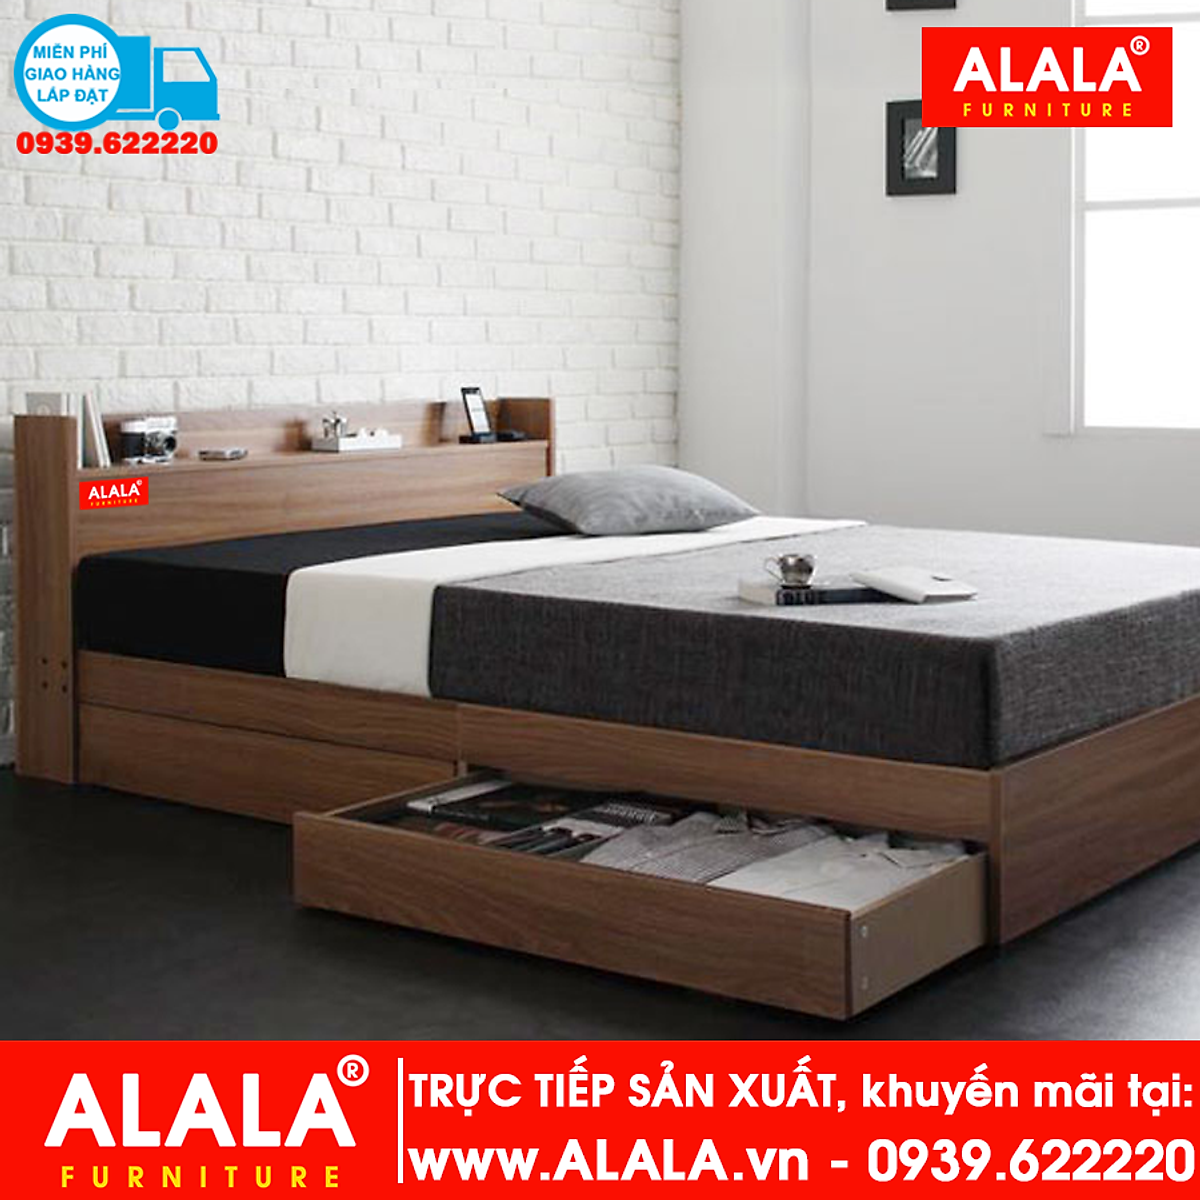 Giường ngủ ALALA11 gỗ HMR chống nước - www.ALALA.VN - 0939.622220